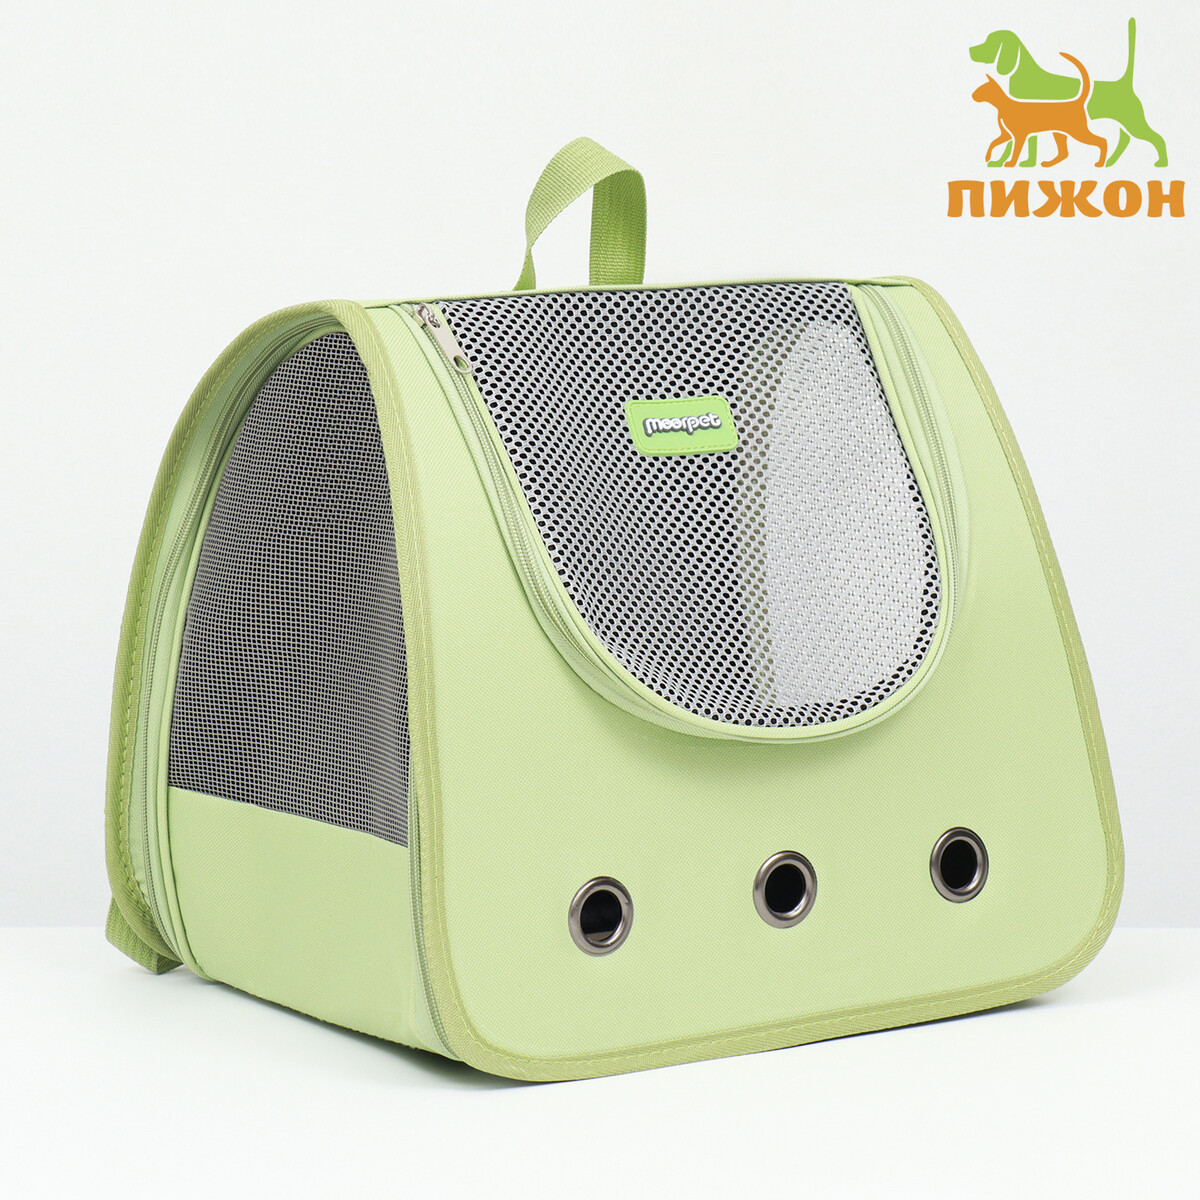 Рюкзак-переноска для животных, 35 х 30 х 26 см, зеленый рюкзак для переноски животных прозрачный 31 х 28 х 42 см зеленый